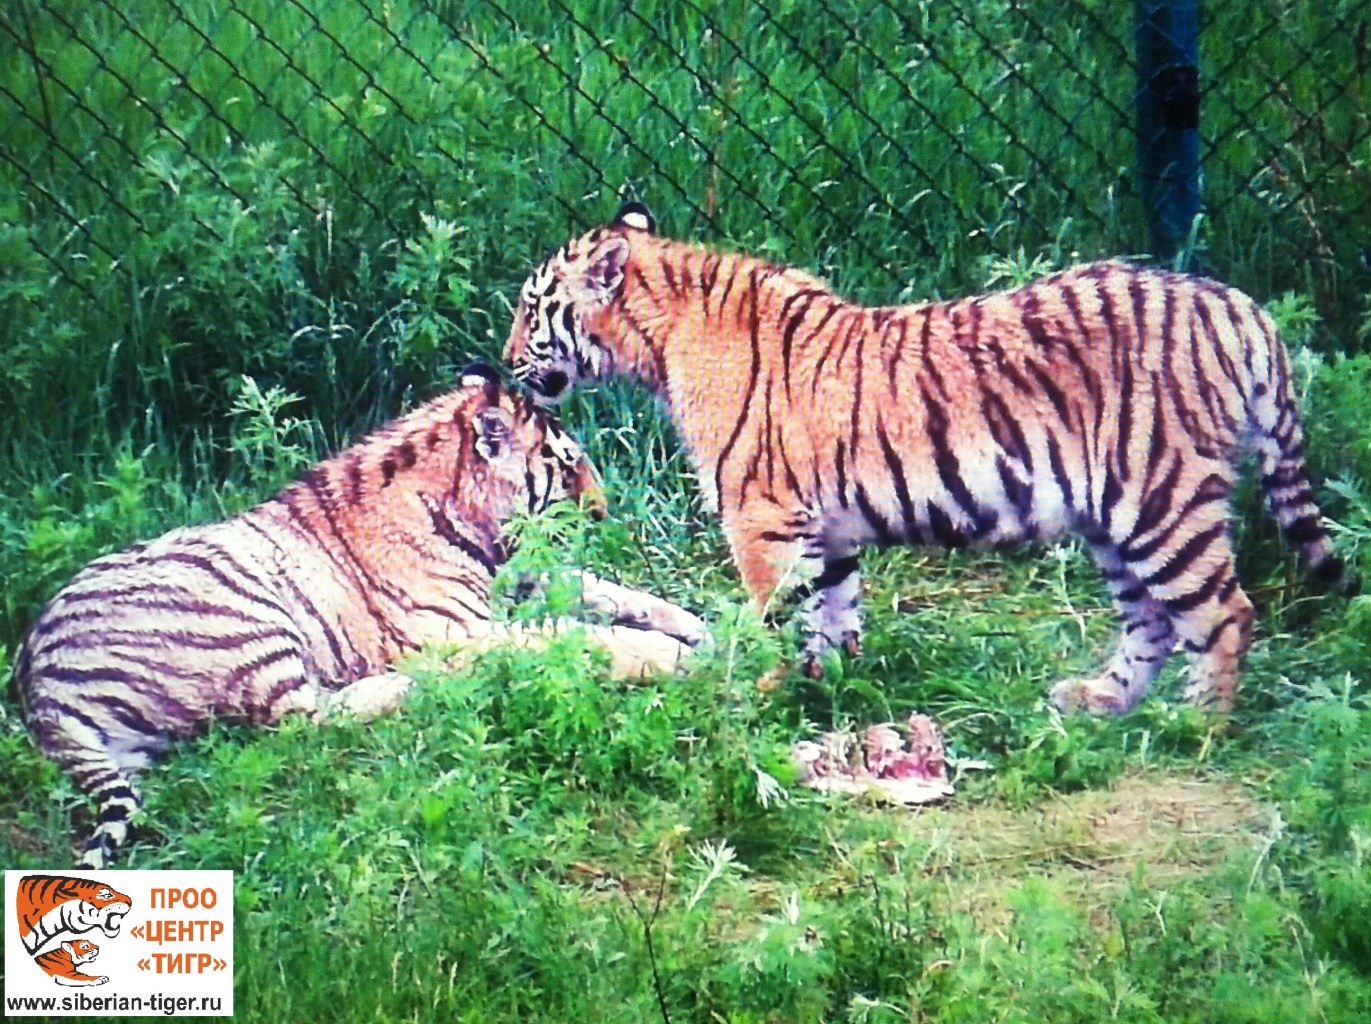 Спасенные тигрята учатся охотиться